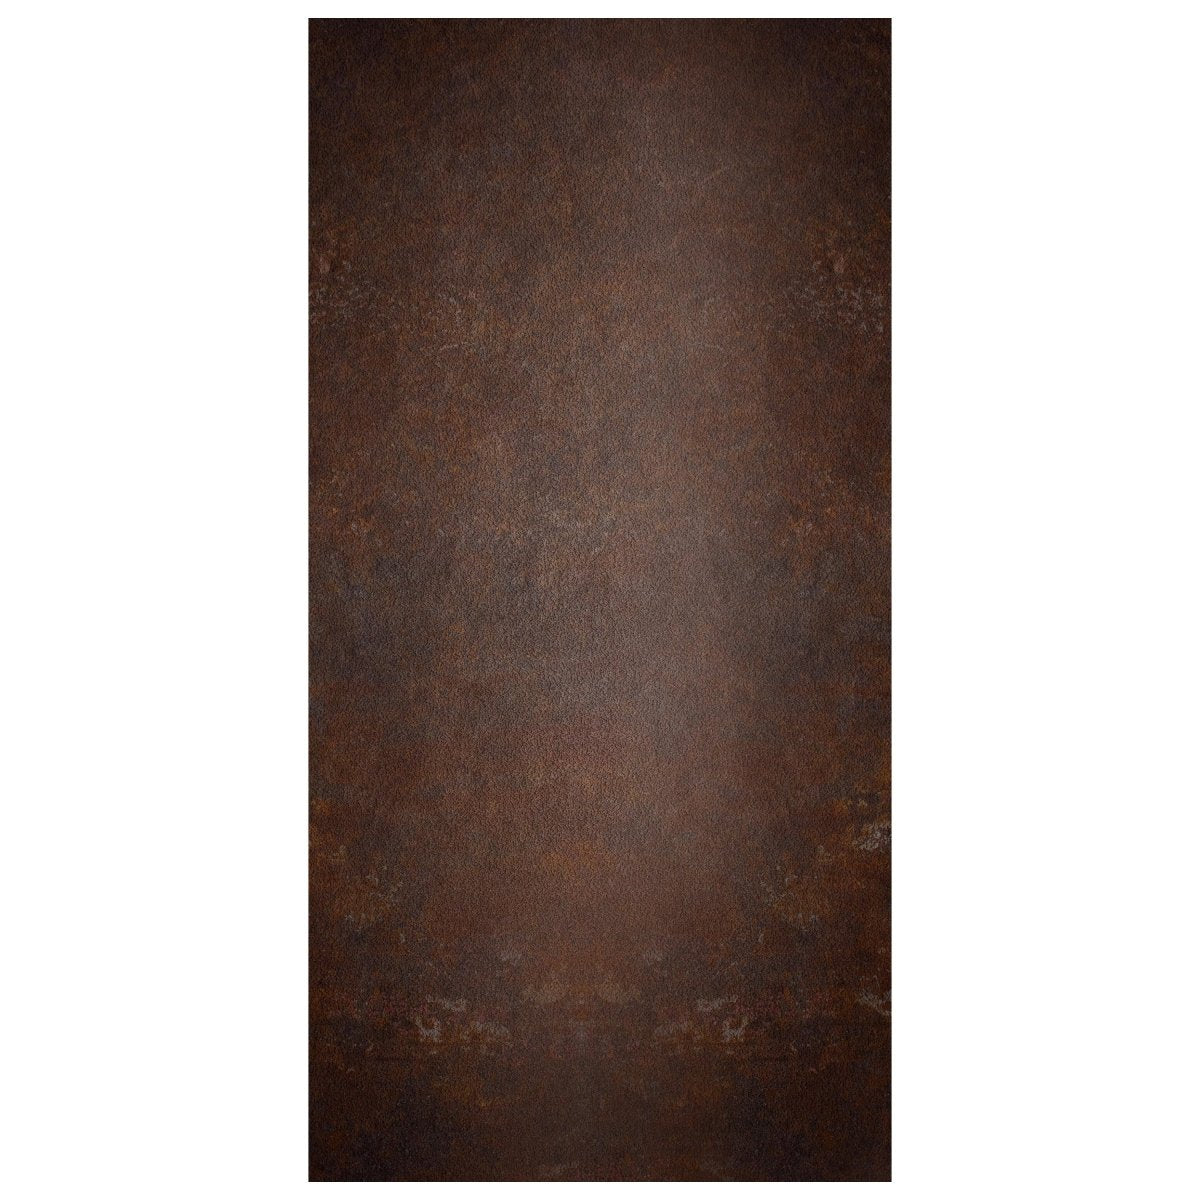 Türtapete rostige Metall Platte, Rost, dunkelrot M1197 - Bild 2